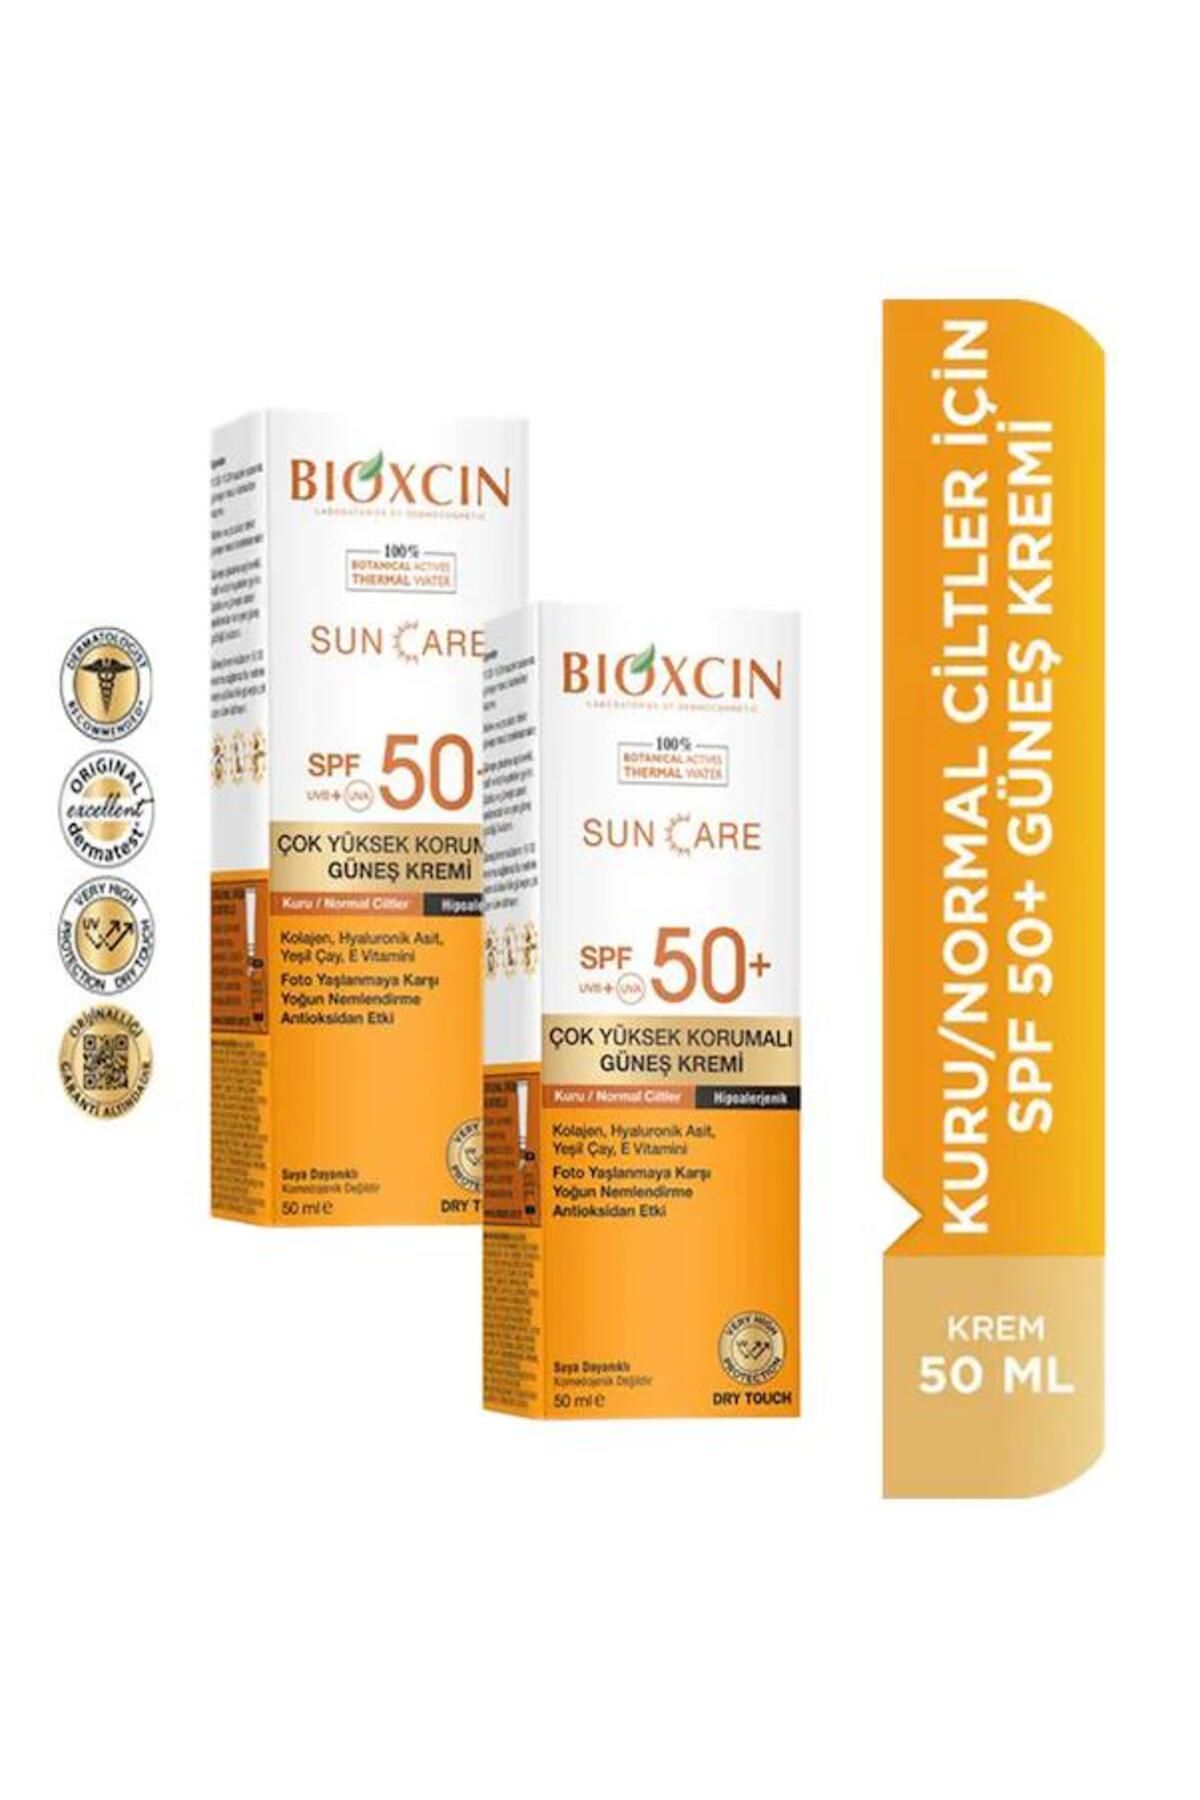 Bioxcin Güneş Kremi Kuru & Normal Ciltler Için Spf50 50 ml 2 Adet